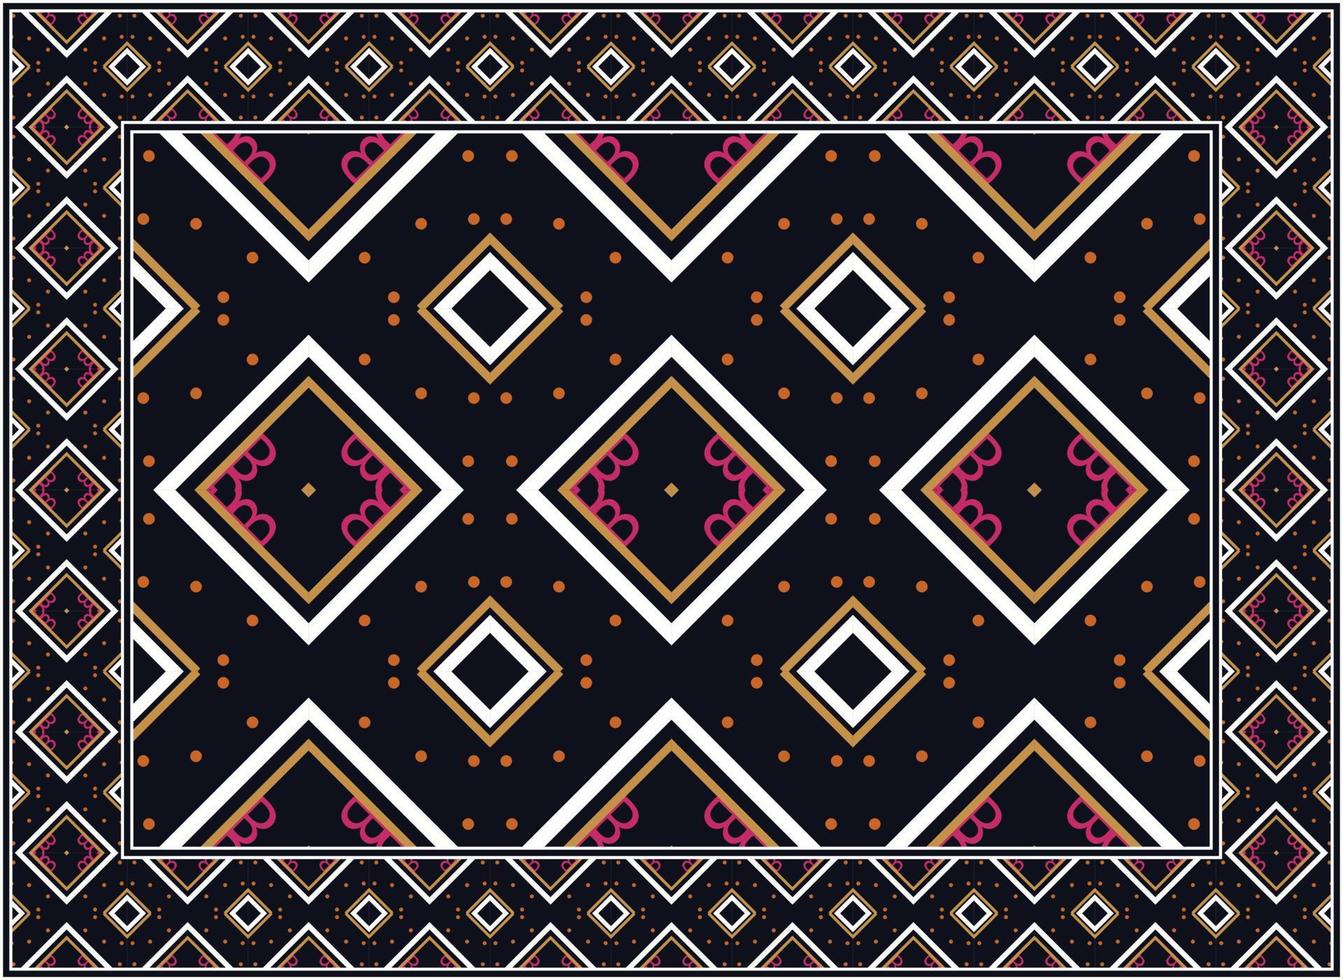 moderno persa alfombra, motivo étnico sin costura modelo escandinavo persa alfombra moderno africano étnico azteca estilo diseño para impresión tela alfombras, toallas, pañuelos, bufandas alfombra, vector